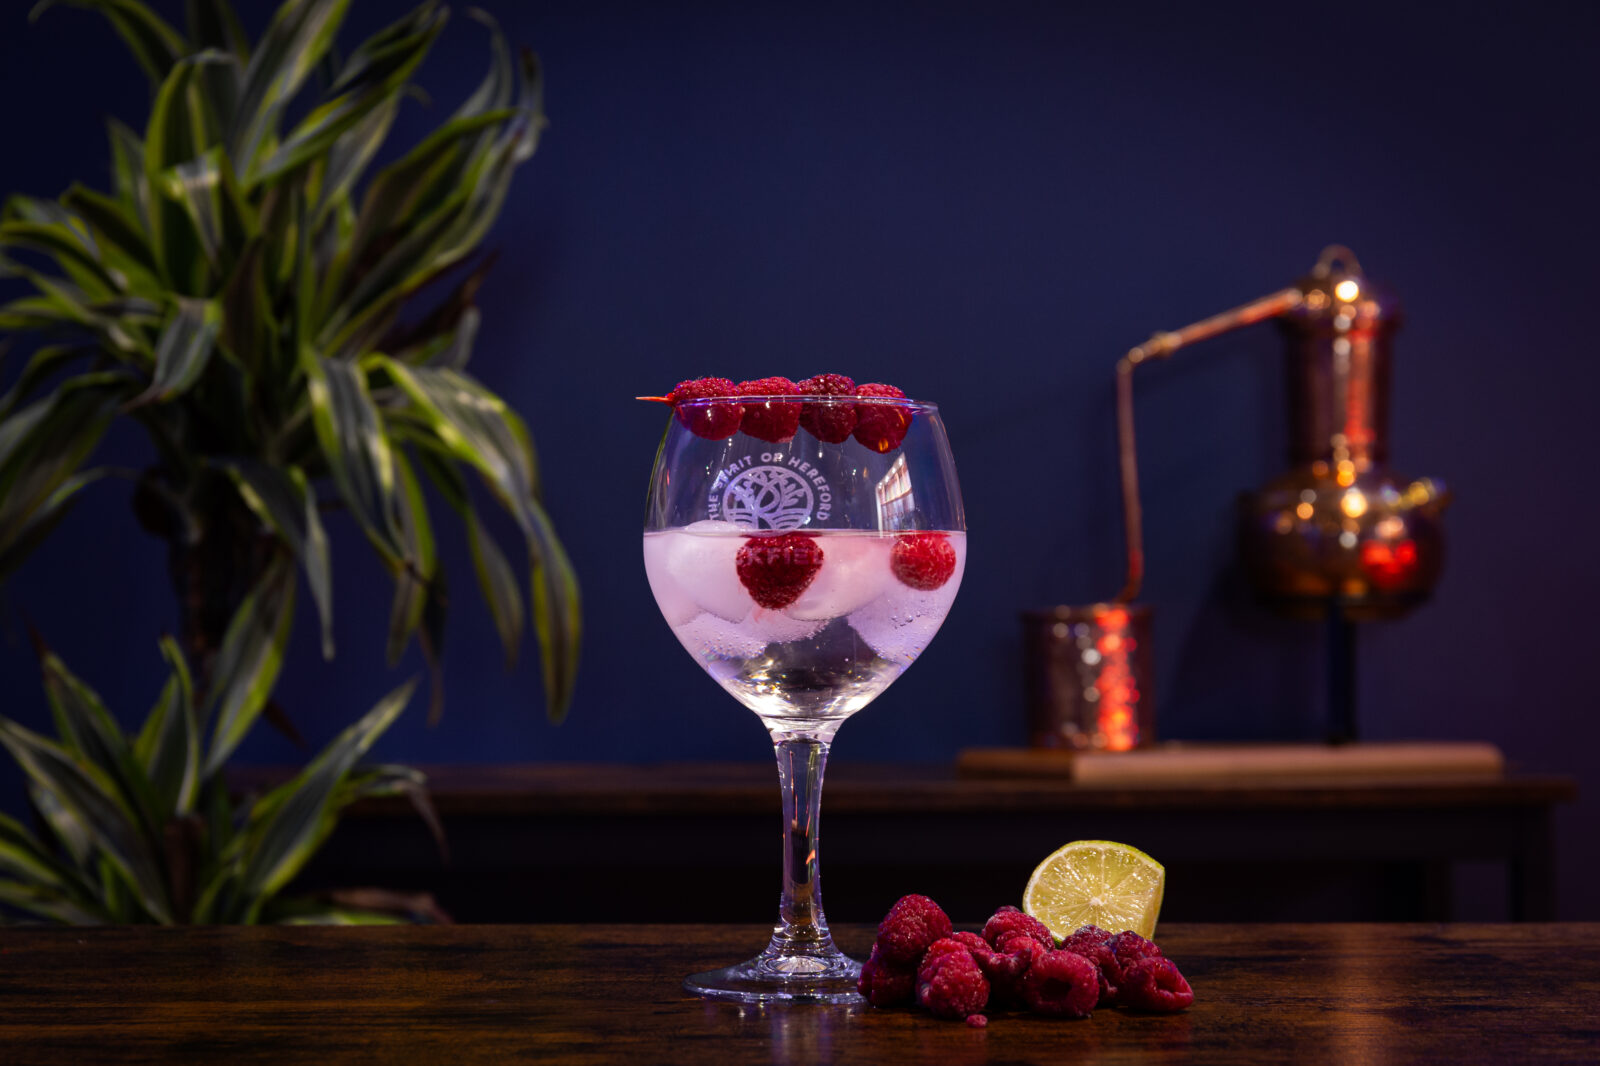 Raspberry and Rhubarb Gin signature Serve